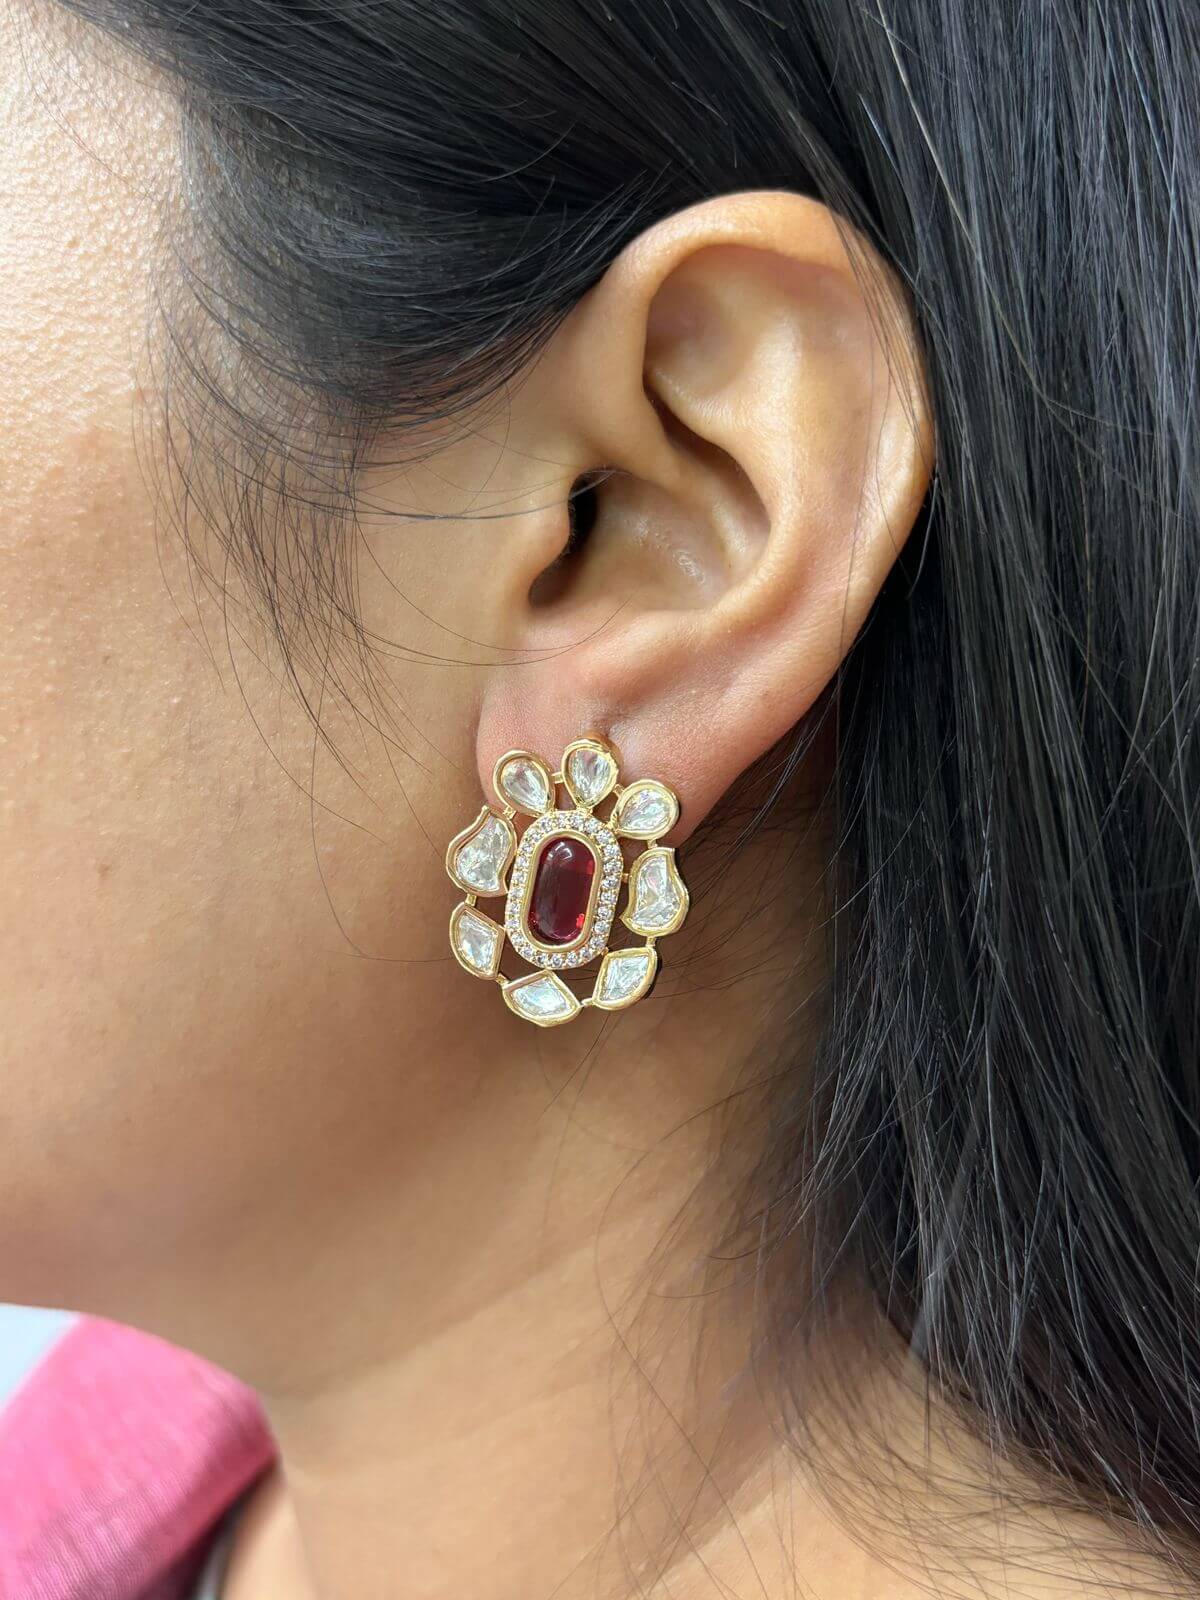 1981 Vintage Soviet USSR ROSE Gold 583 14k Women's Jewelry Stud Earrings 3  gr | eBay